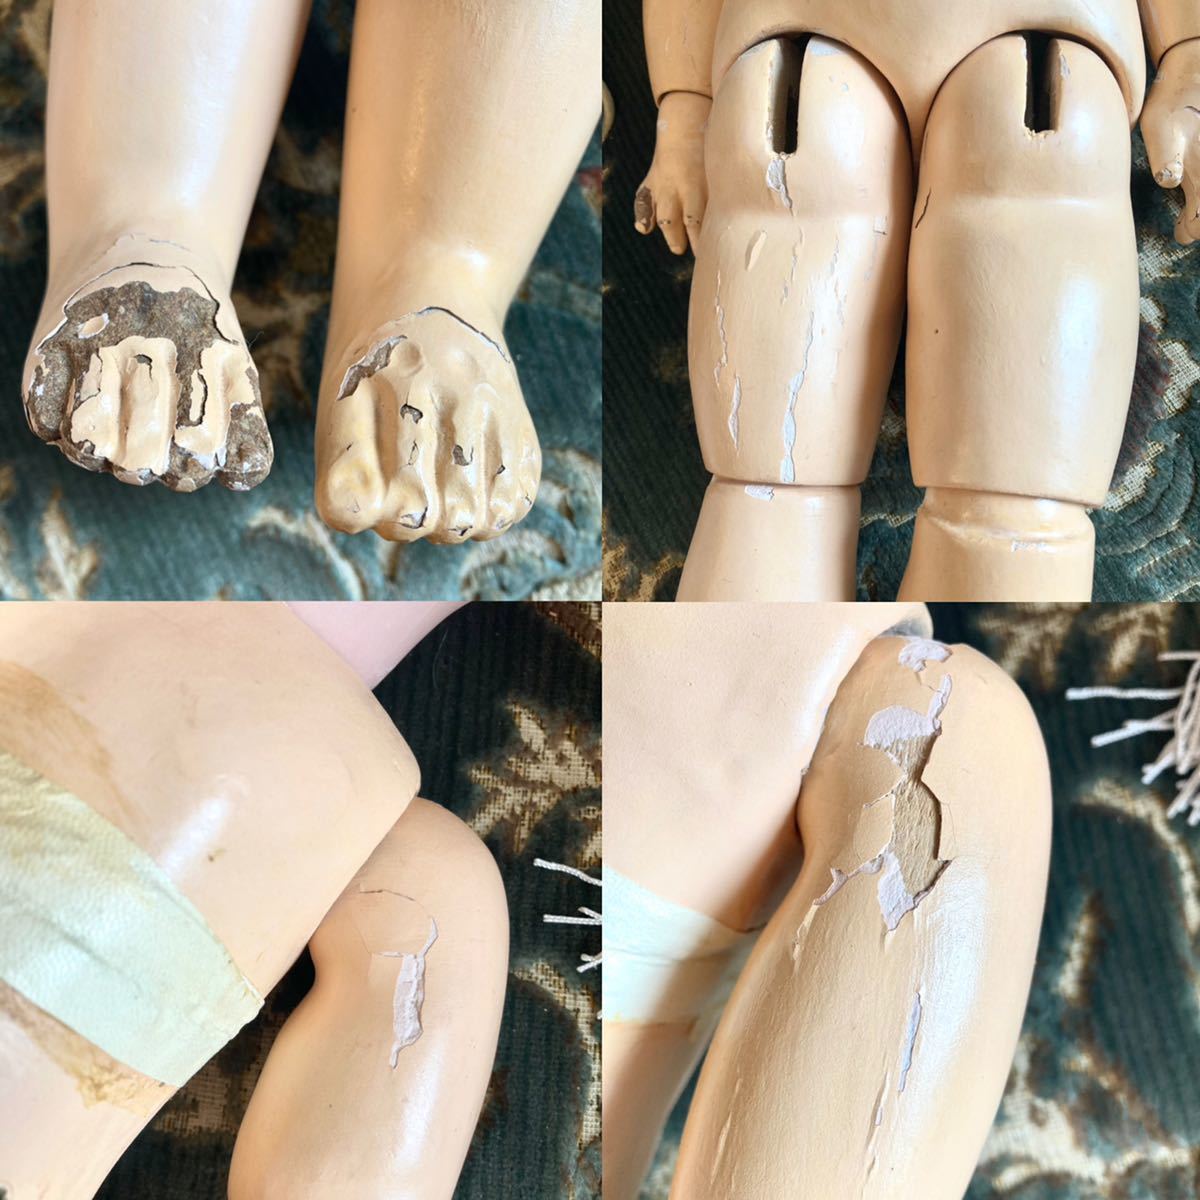  античный DEPte-tojumo- Bebe jumo- фарфоровая кукла Франция кукла антиквариат товар кожа обувь 54cm